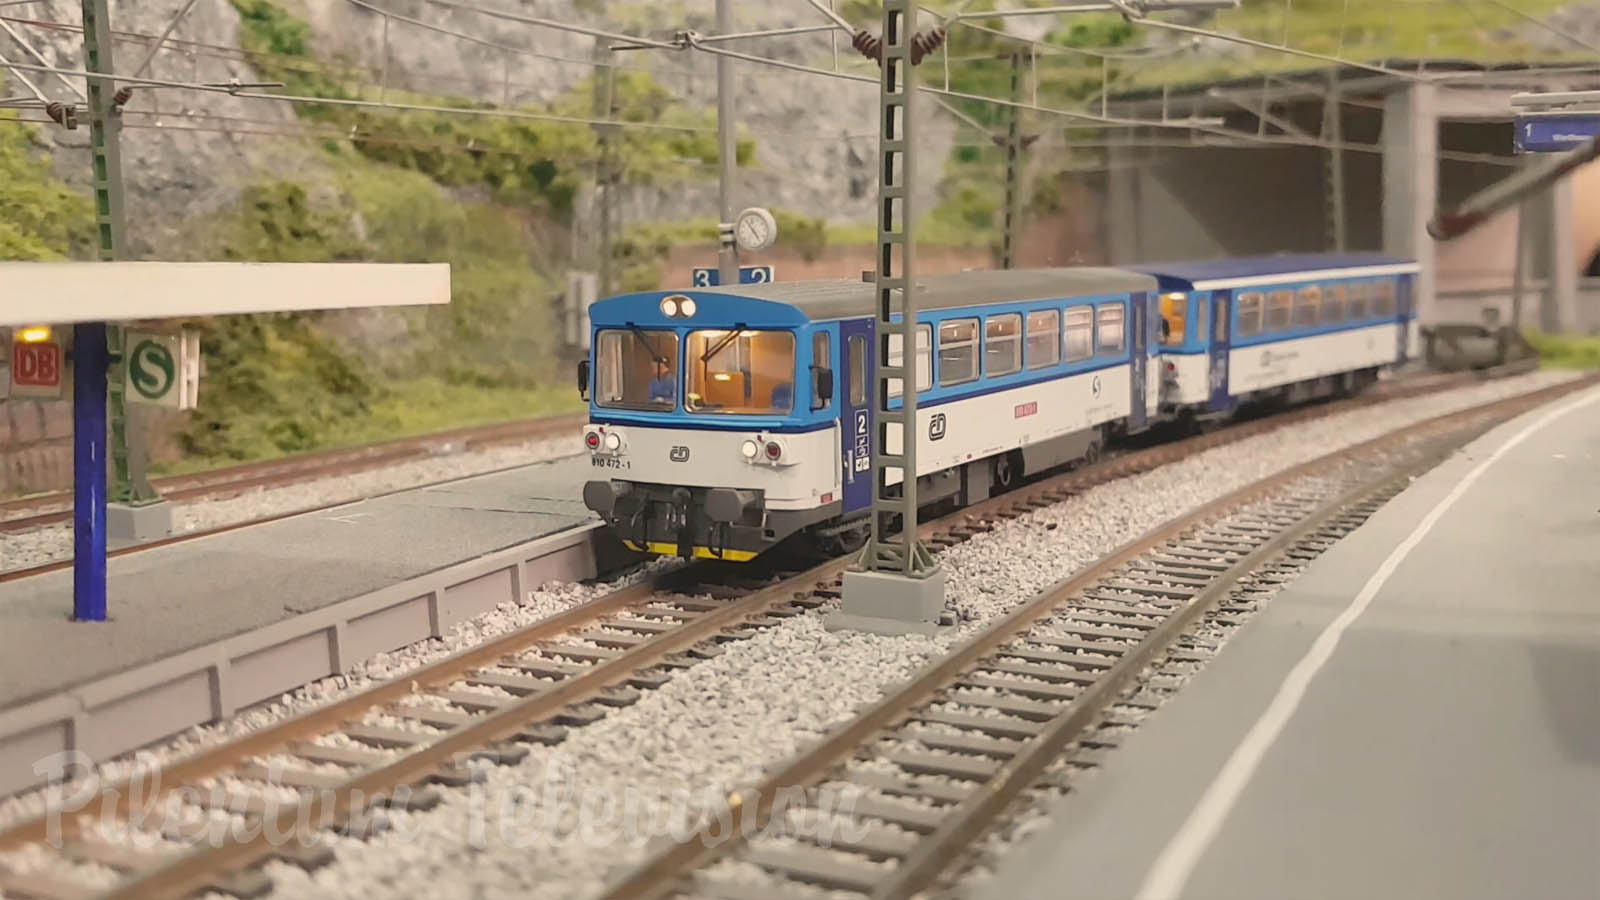 Modelos de trenes eléctricos y locomotoras en escala HO de la República Checa